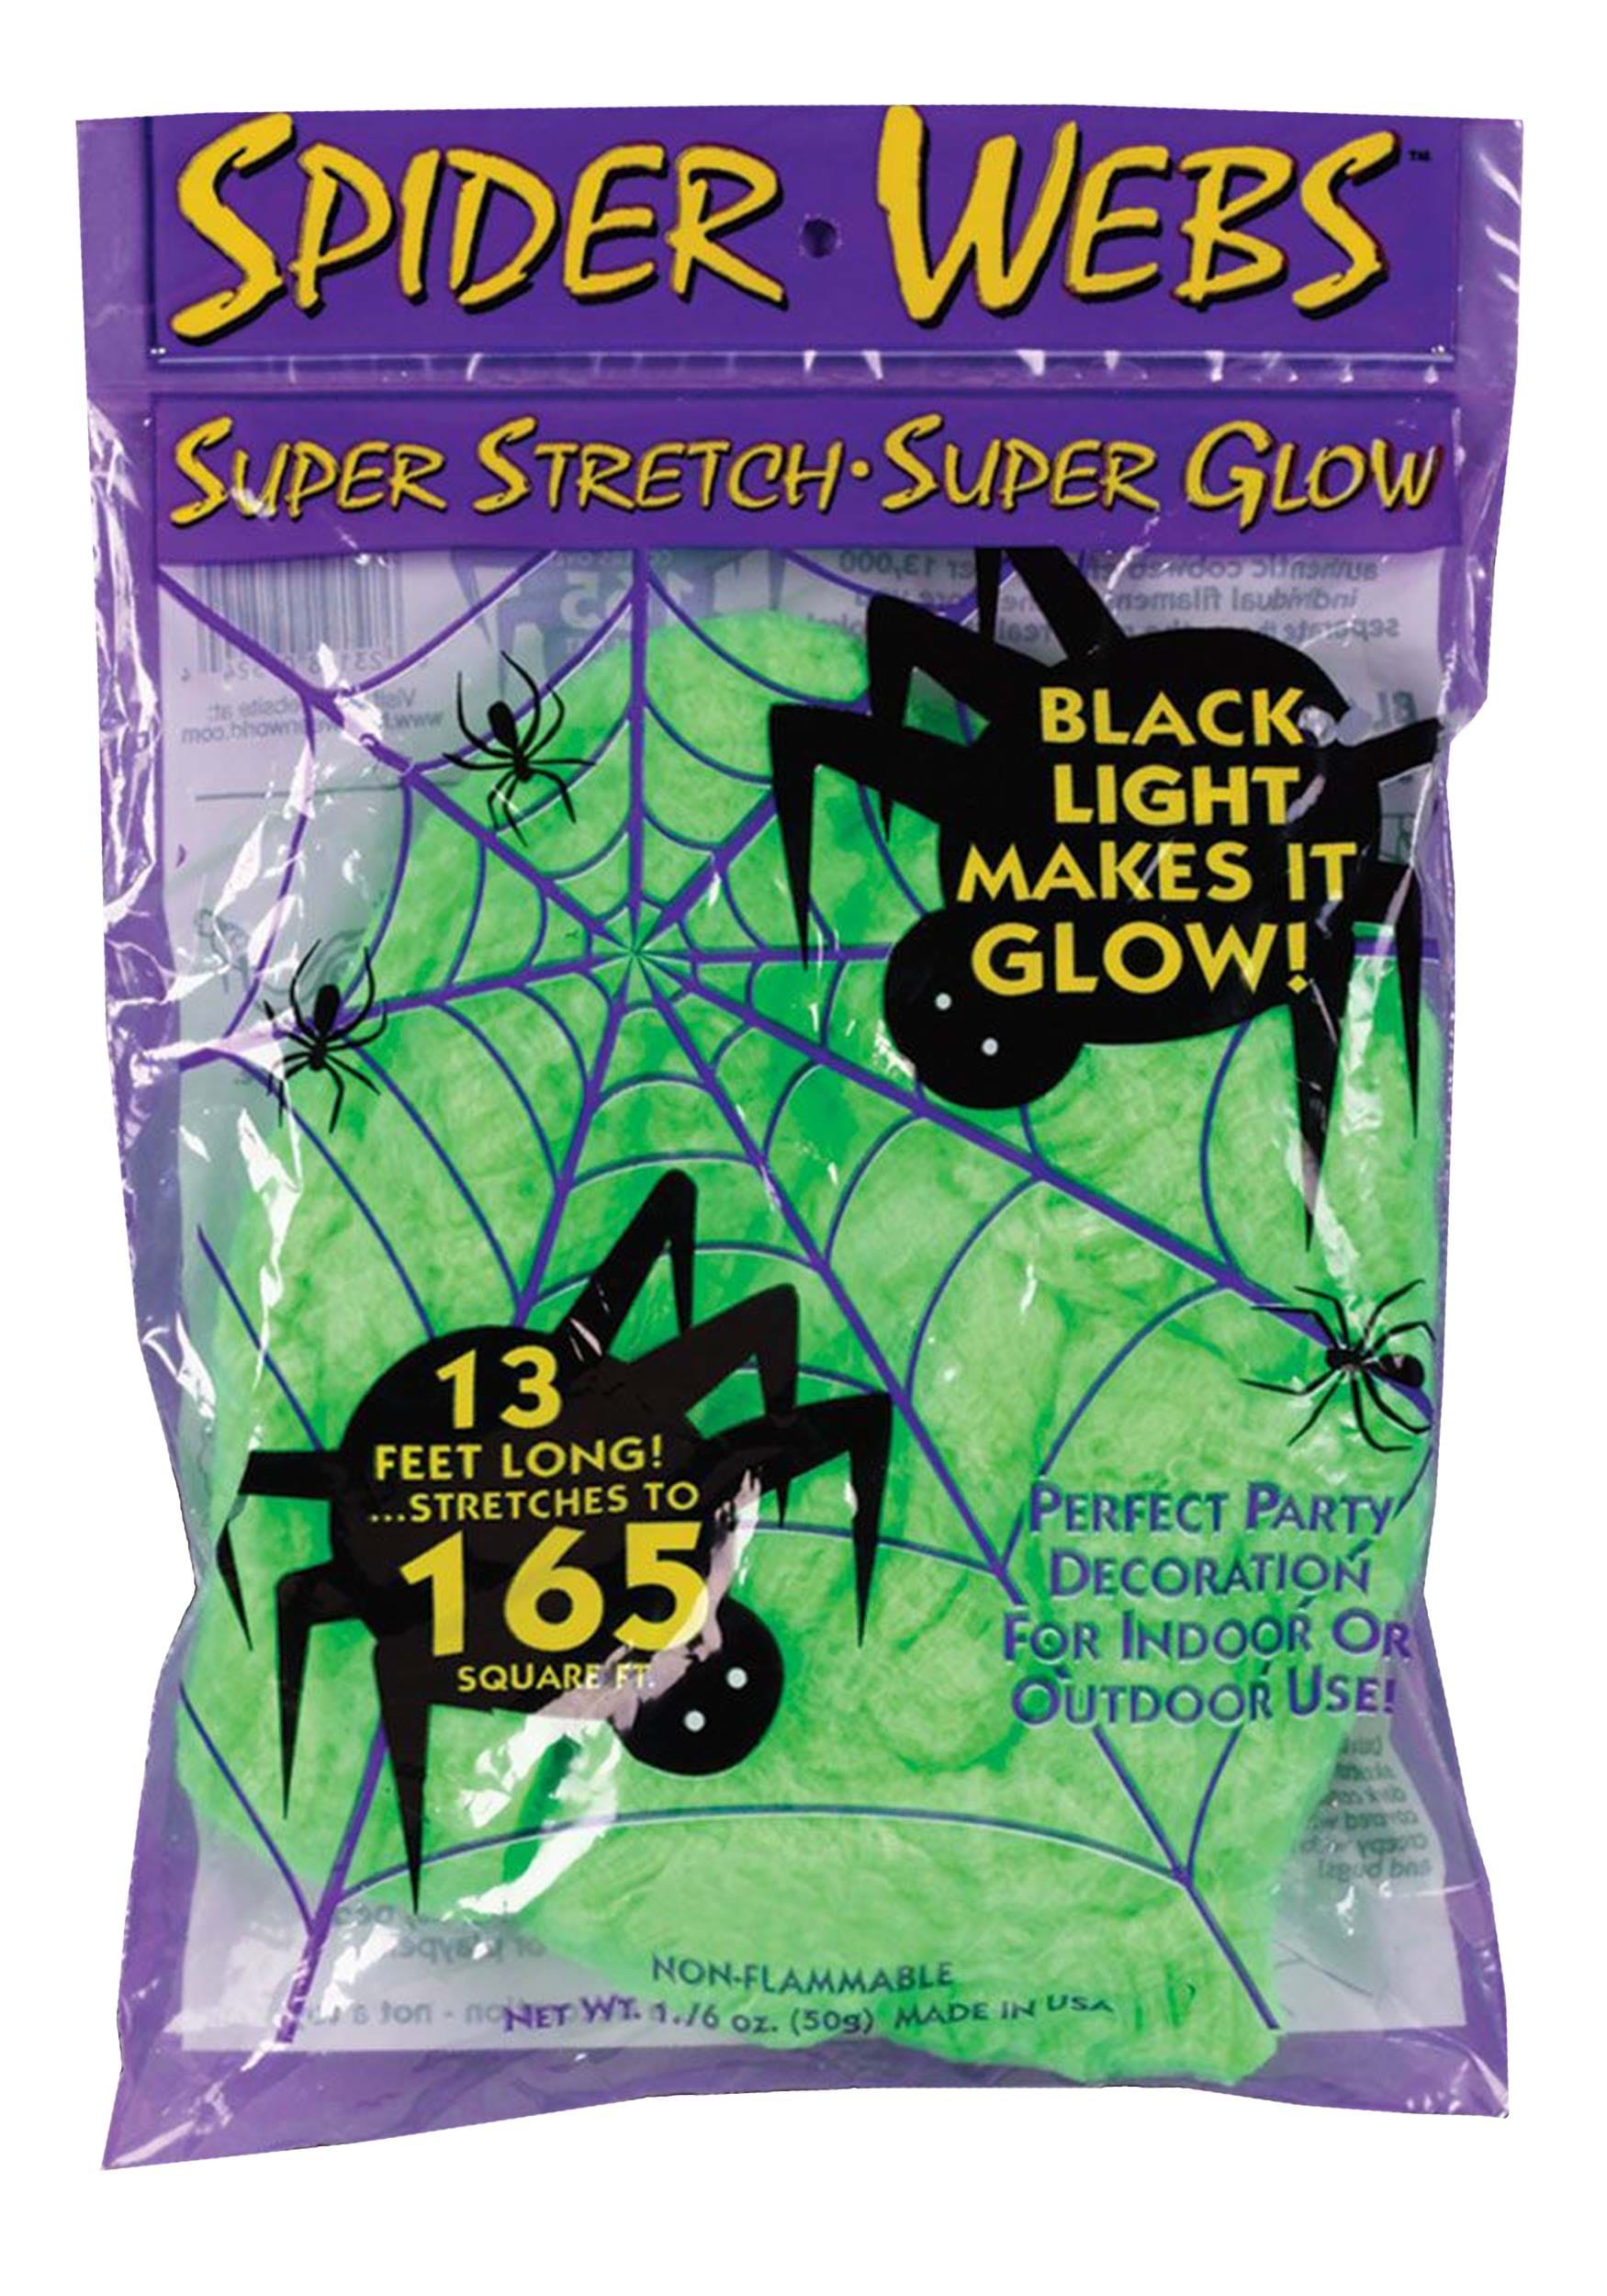 165 Square FT Super Stretch Cosmic Black Light Web Decoration | Spider Webs